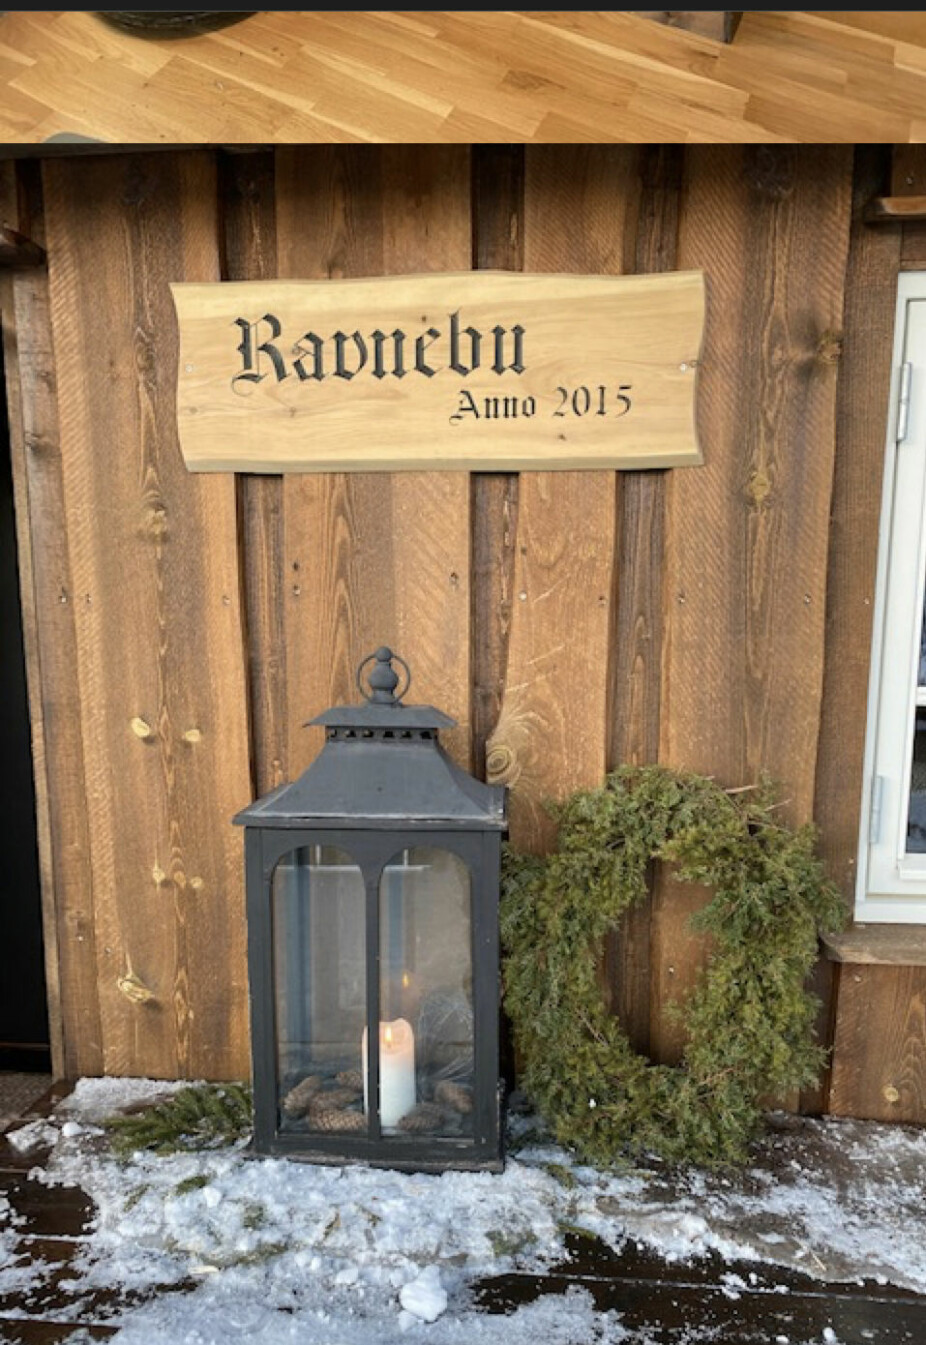 <b>Ravnebu:</b> Hilde U. Olsen og Rune Ravn Olsen har hytte i Birtedalen. Hilde forteller at Rune har navnet Ravn fra sin mor, og de er stolte over familienavnet. Derfor fikk hytta navnet Ravnebu. Rune har til og med en ravn hengende i taket.